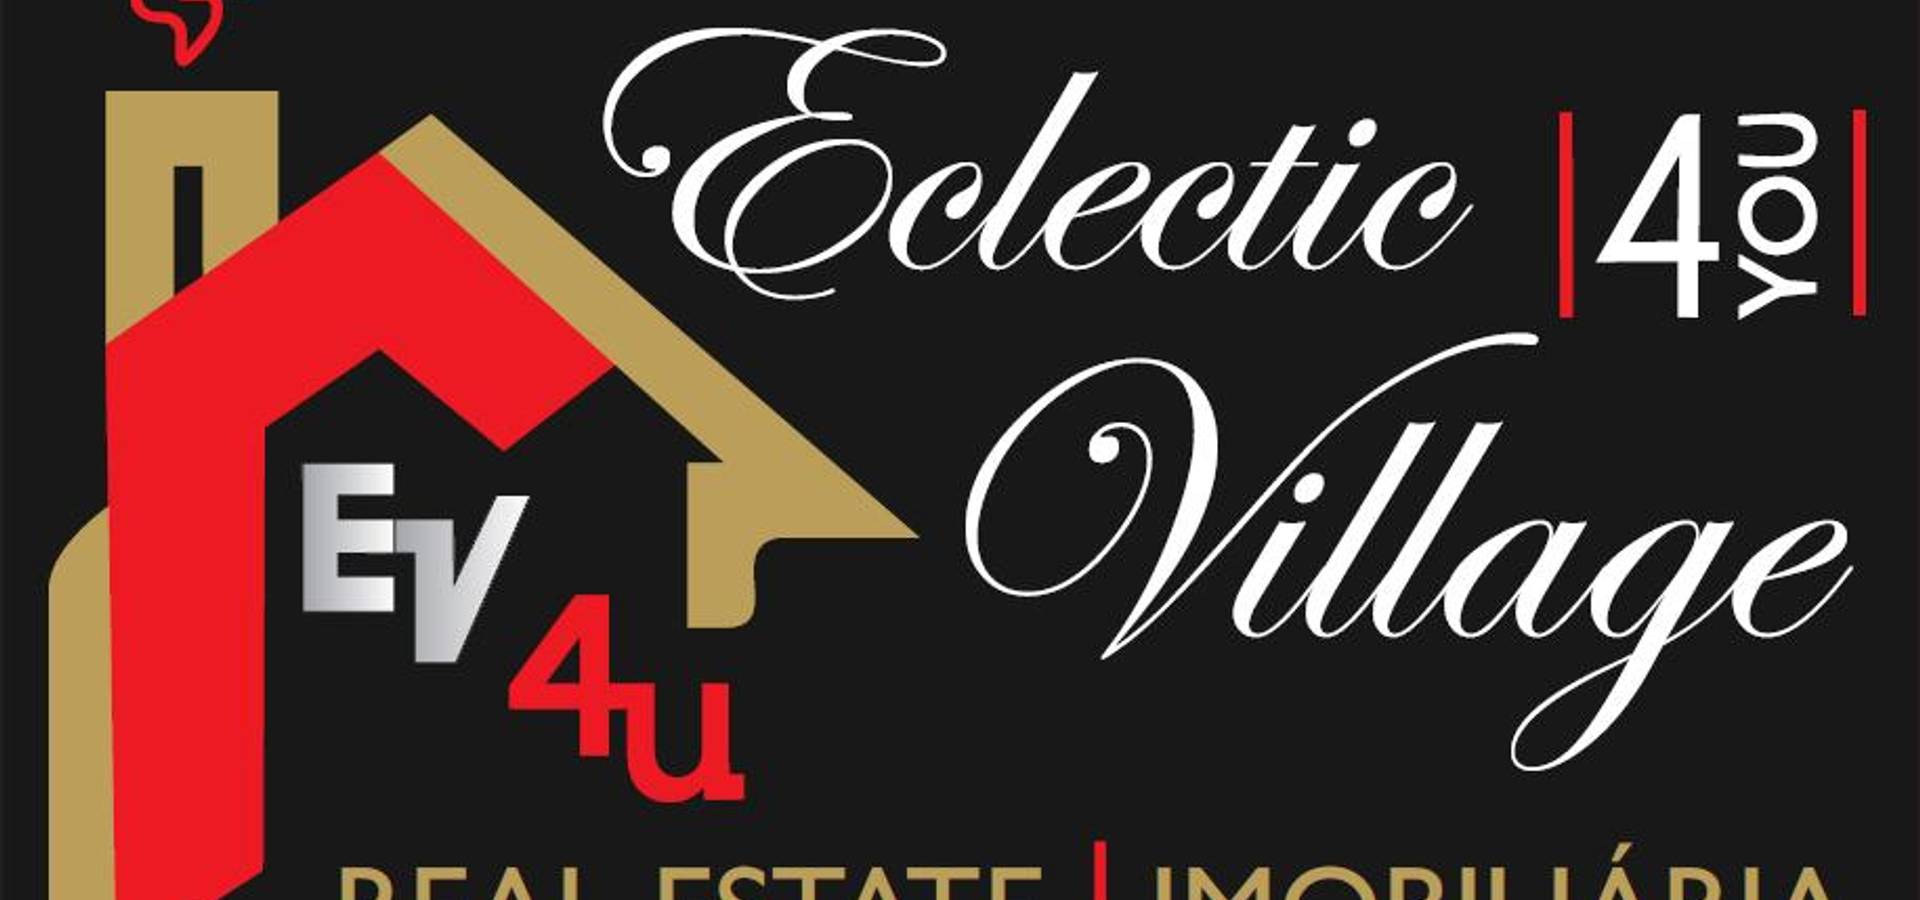 EclecticVillage – Mediação Imobiliária, Lda